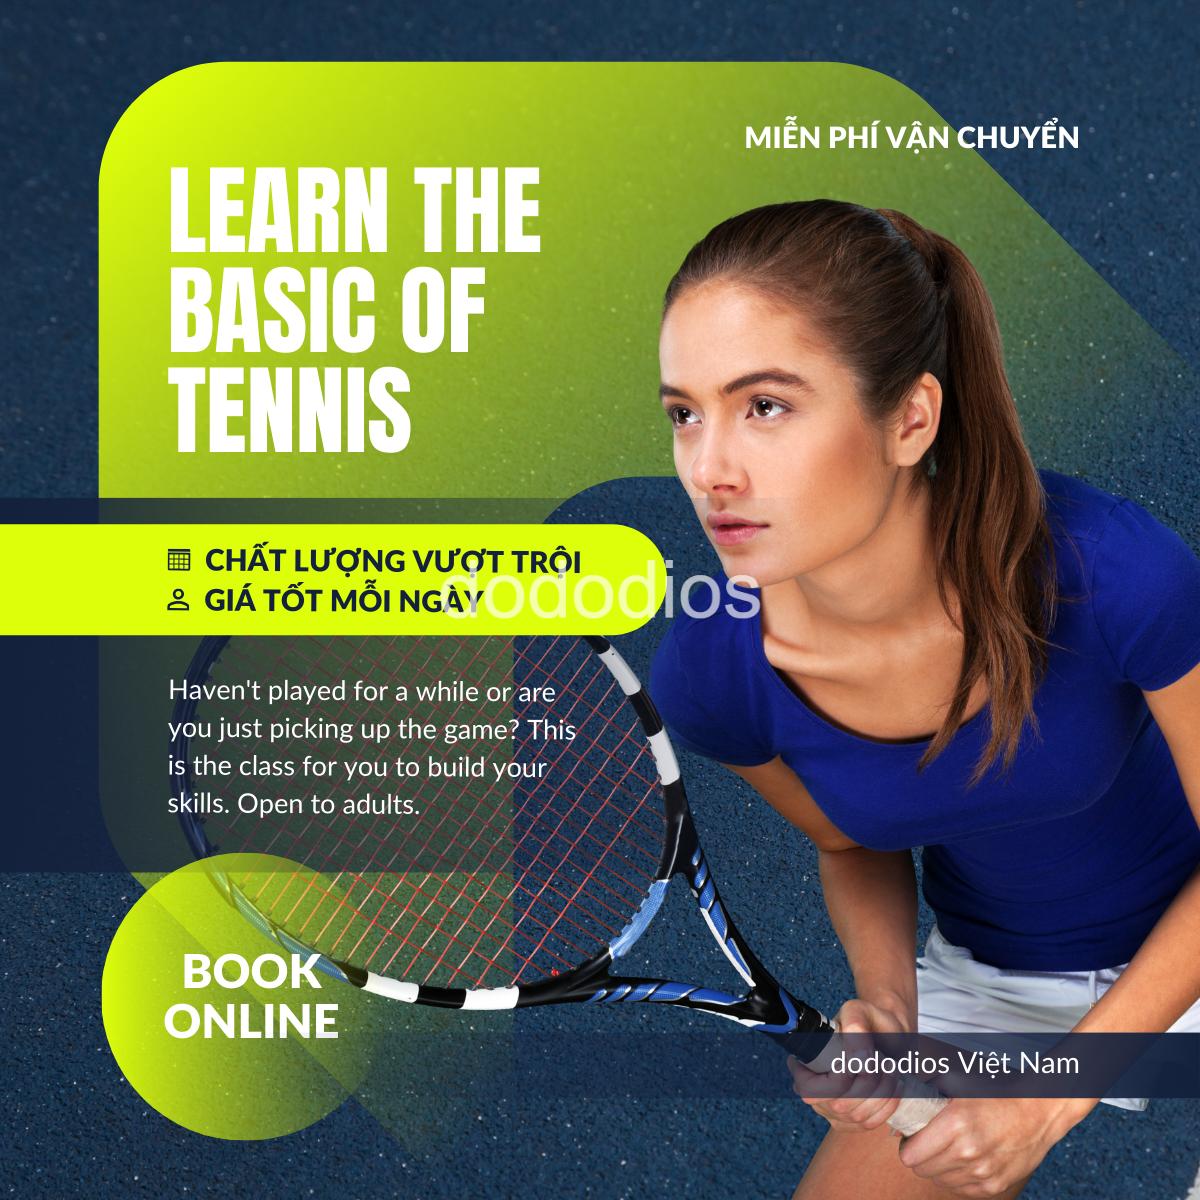 combo 10 Bóng Banh Tennis Chuyên Dụng Mới 100% – Độ Nảy Cao 1.35 – 1.47m Chuẩn Quốc Tế - Chính hãng dododios